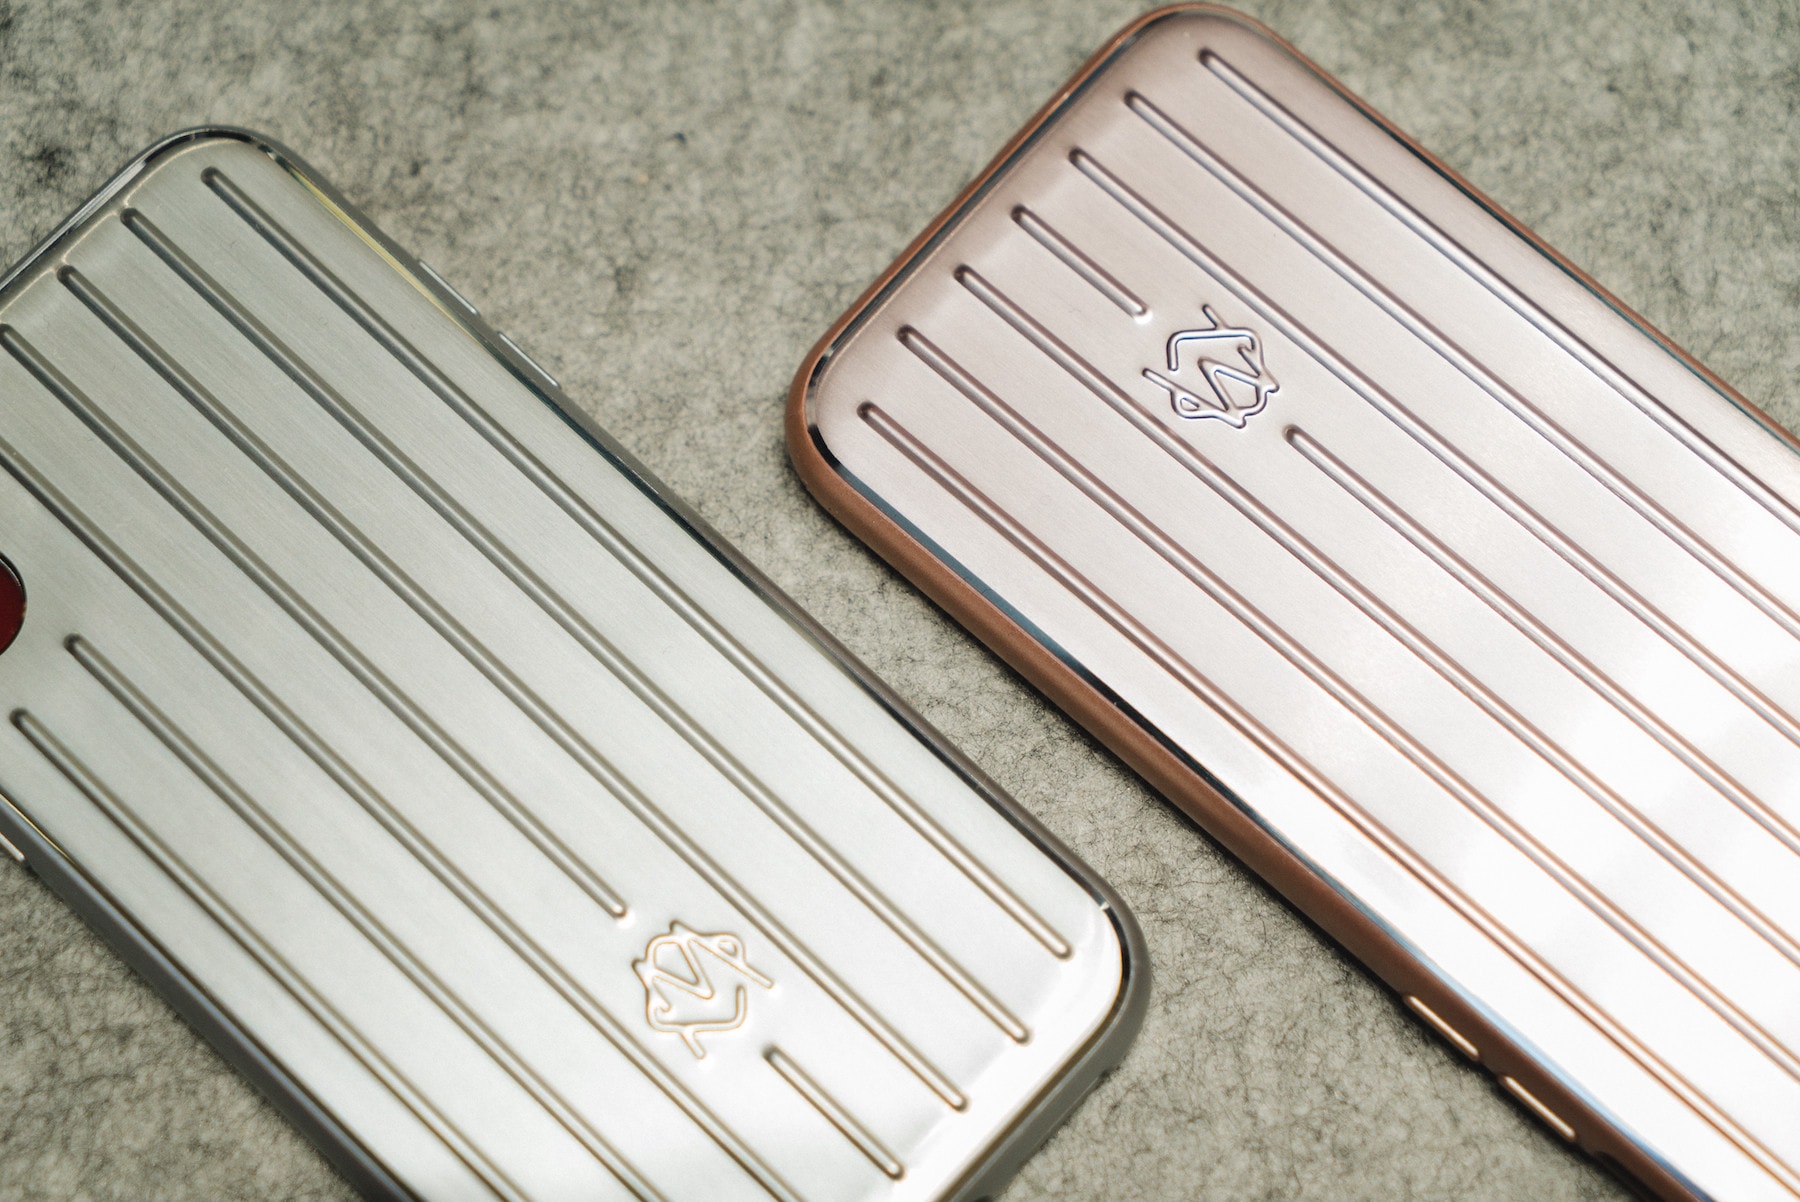 리모와, 알루미늄 토파즈 캐리어 디자인의 아이폰 케이스 출시